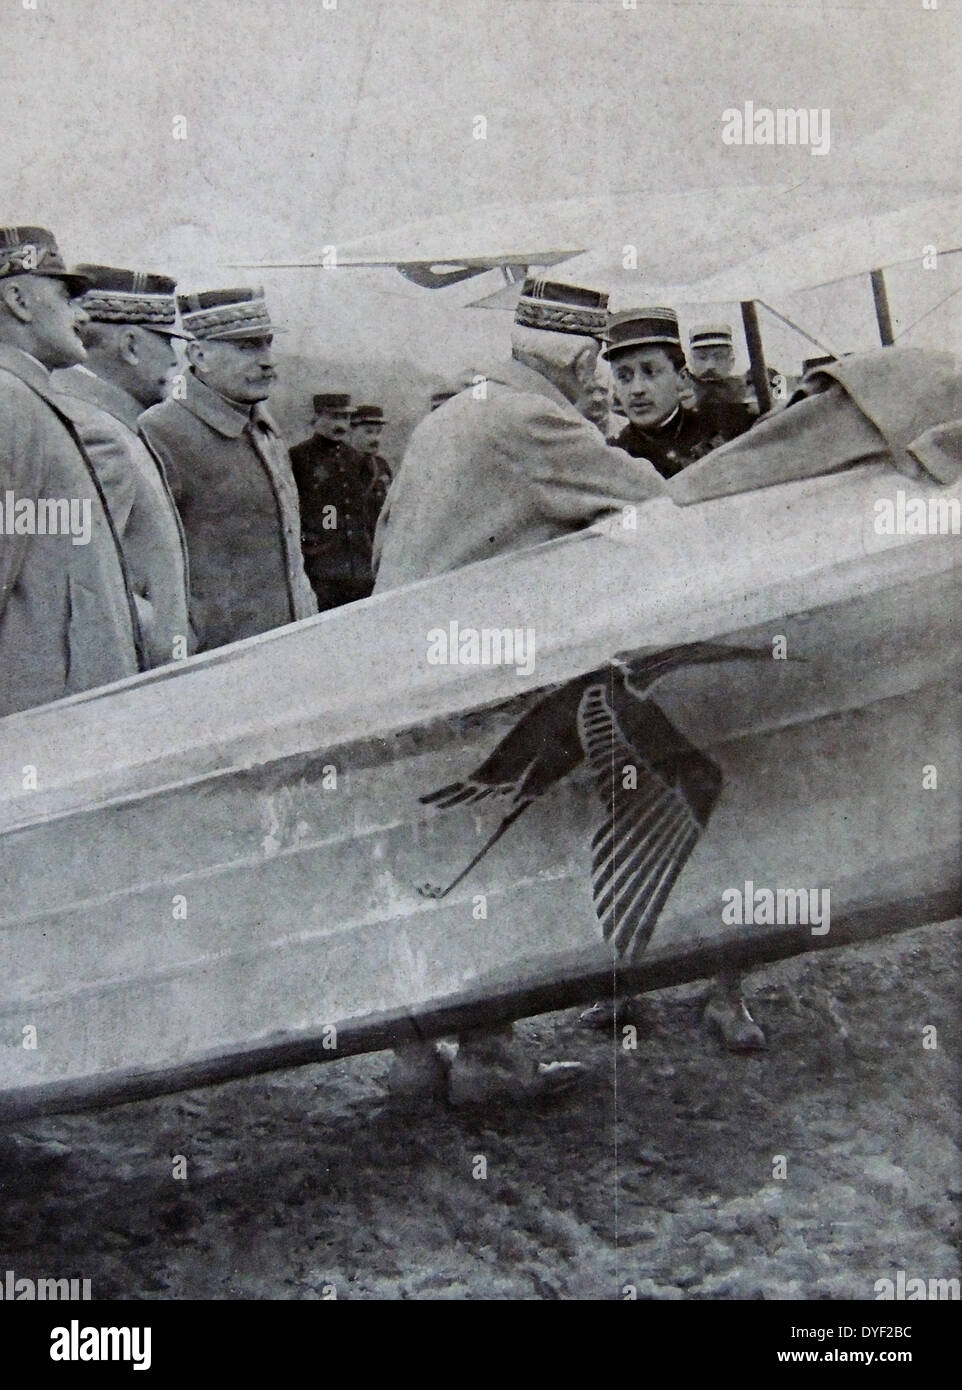 General Foch und leitende Offiziere der Armee Grüße französische Air Ace pilot Captain Guynemer neben ein Flugzeug der französischen Armee 1917 aircfraft im September 1916 Stockfoto